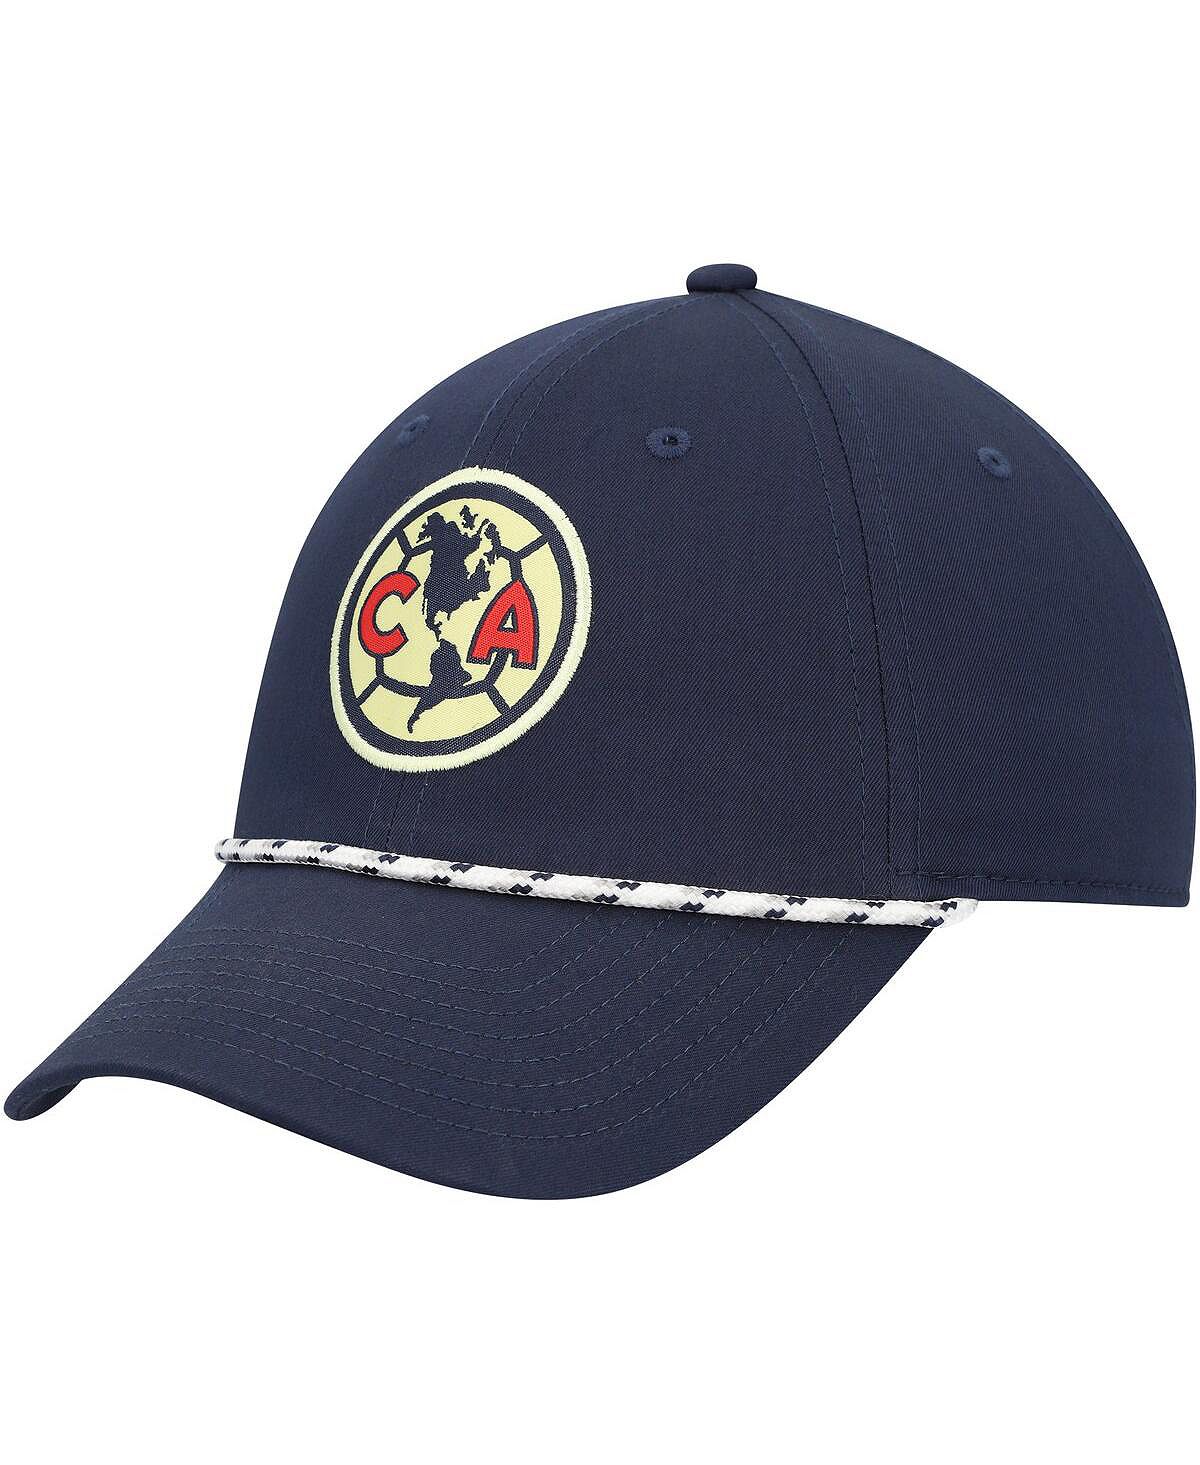 мужская синяя регулируемая шляпа cruz azul club gold fan ink Мужская темно-синяя регулируемая шляпа Club America Golf Legacy91 Nike